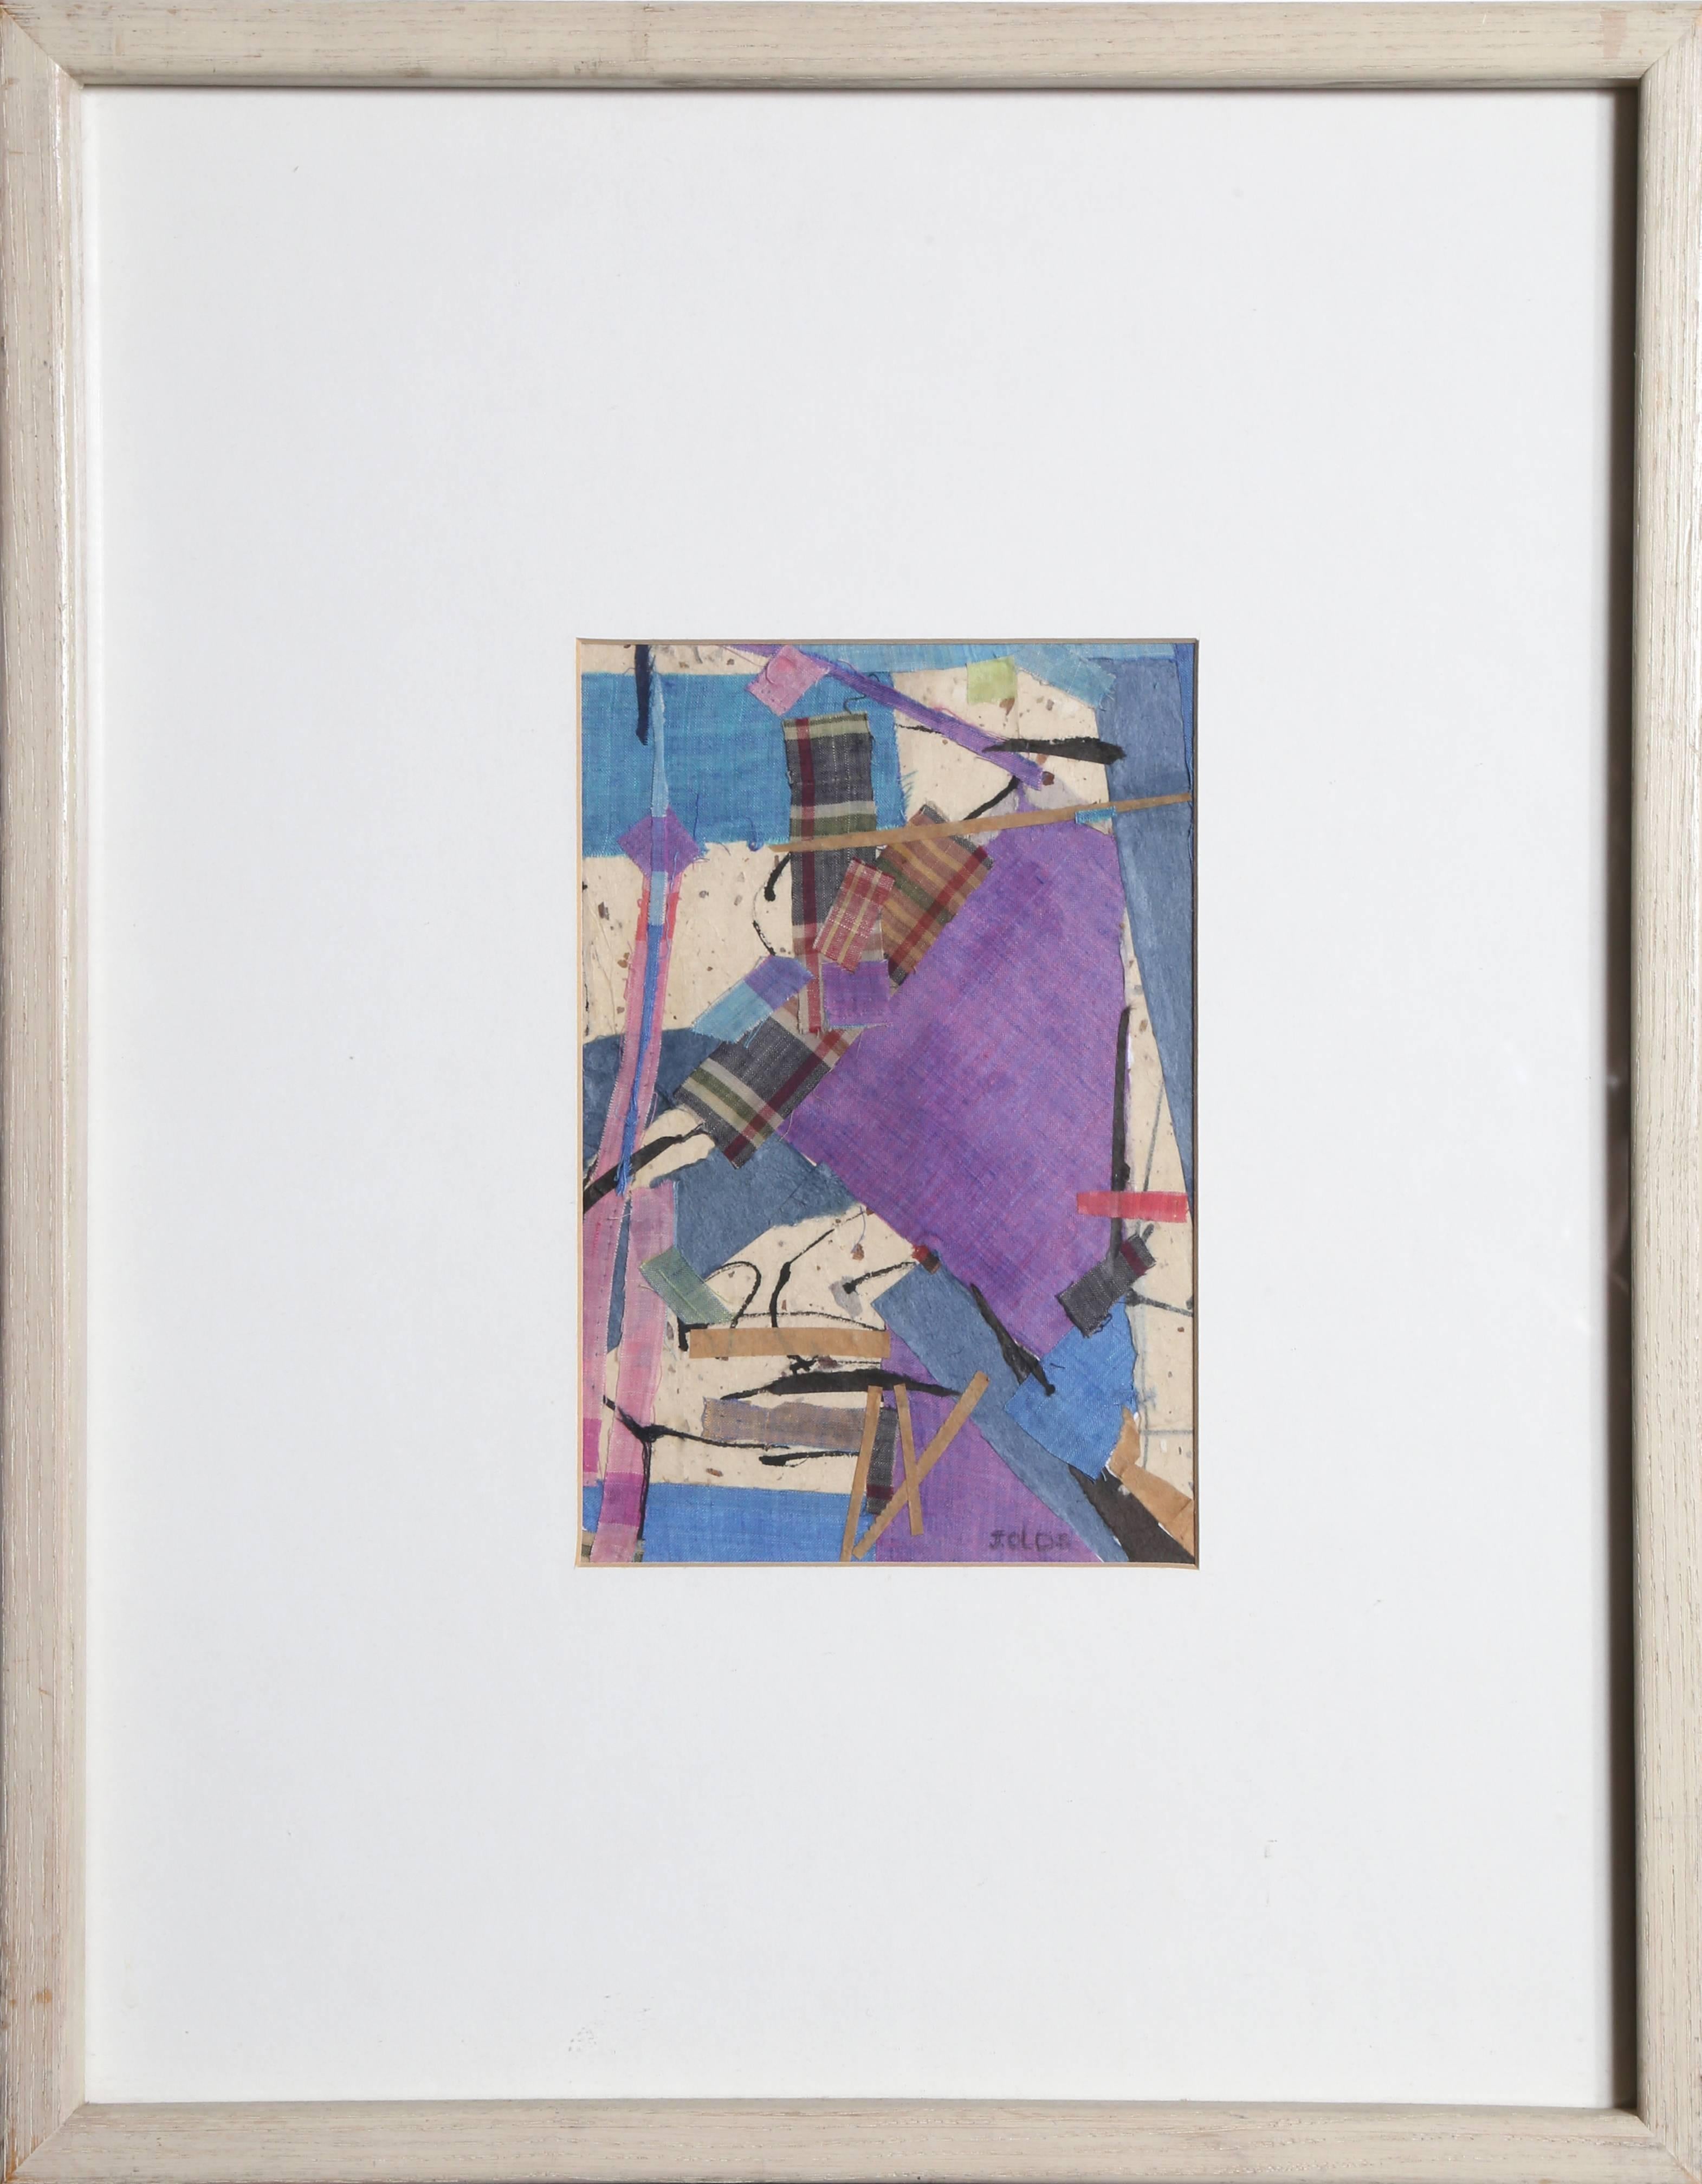 « Lavender, bleu et carreaux », collage technique mixte avec tissu, vers 1983 - Mixed Media Art de Jean Olds